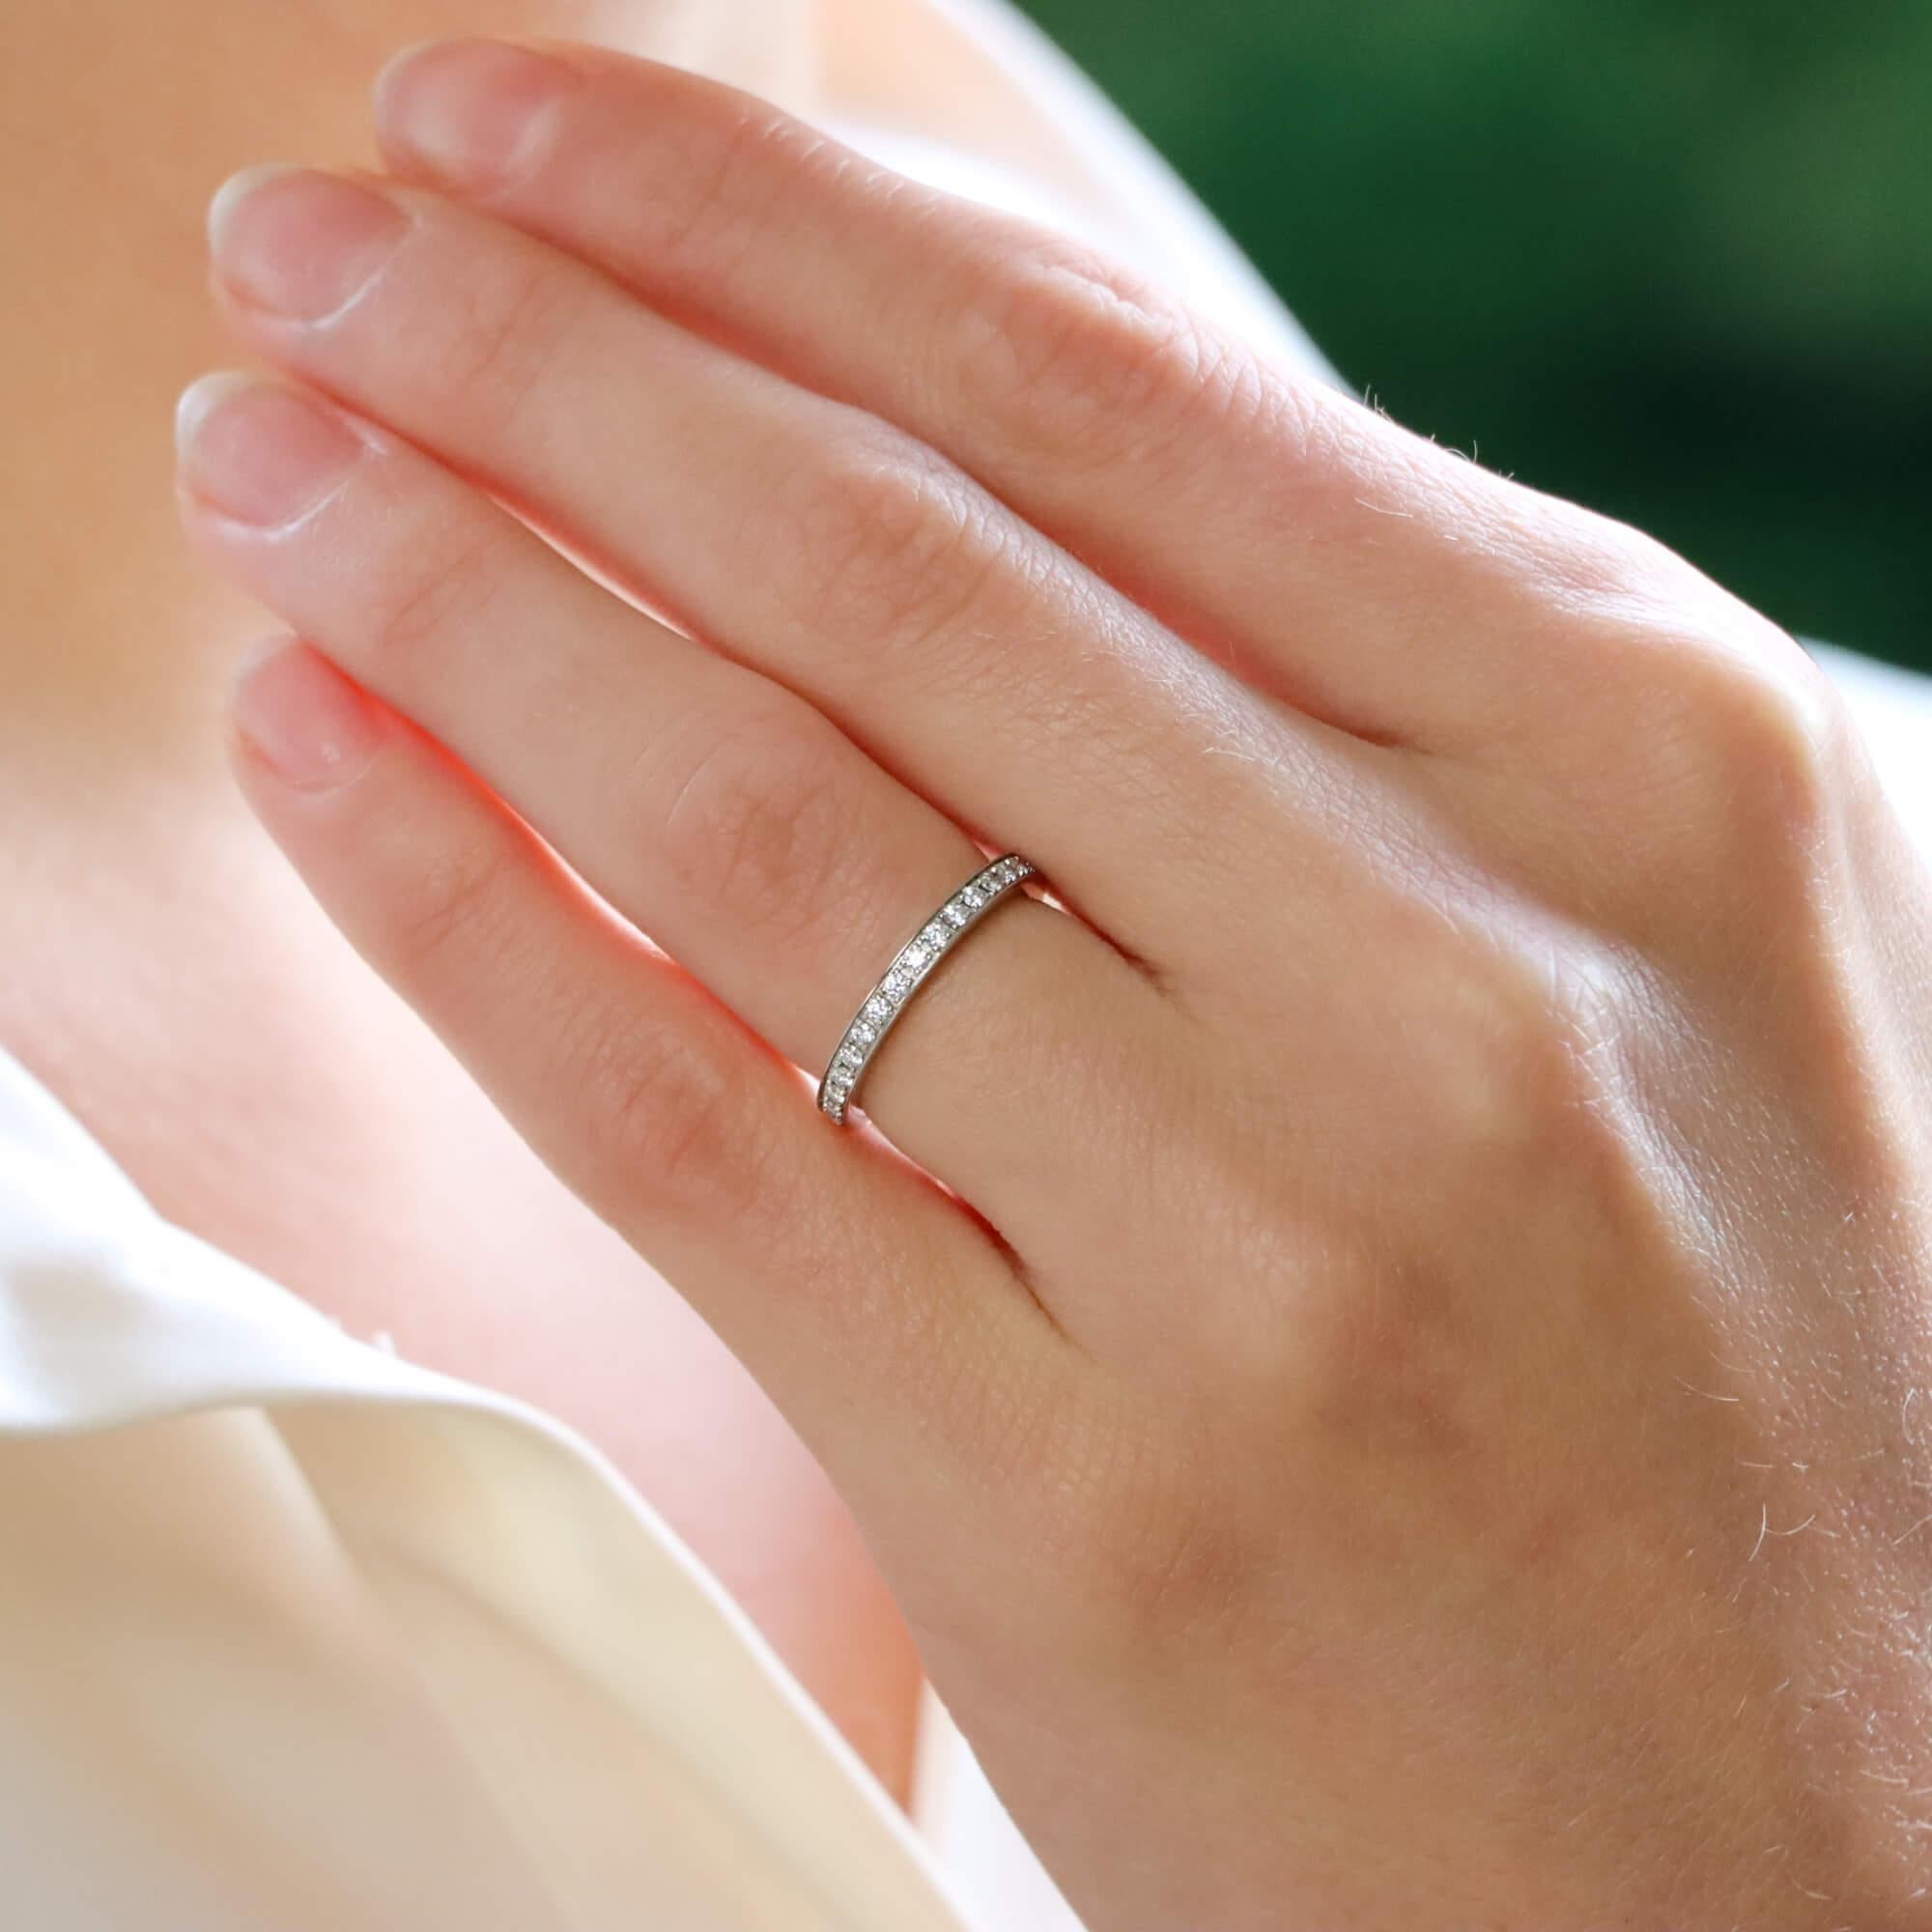 Eine schöne Vintage Bvlgari Diamant volle Ewigkeit Ring in Platin gesetzt.

Der Ring besteht aus 32 runden Diamanten im Brillantschliff, die mit einer Mikrokralle in ein 2 Millimeter breites Platinband gefasst sind.

Das Gesamtgewicht des Diamanten